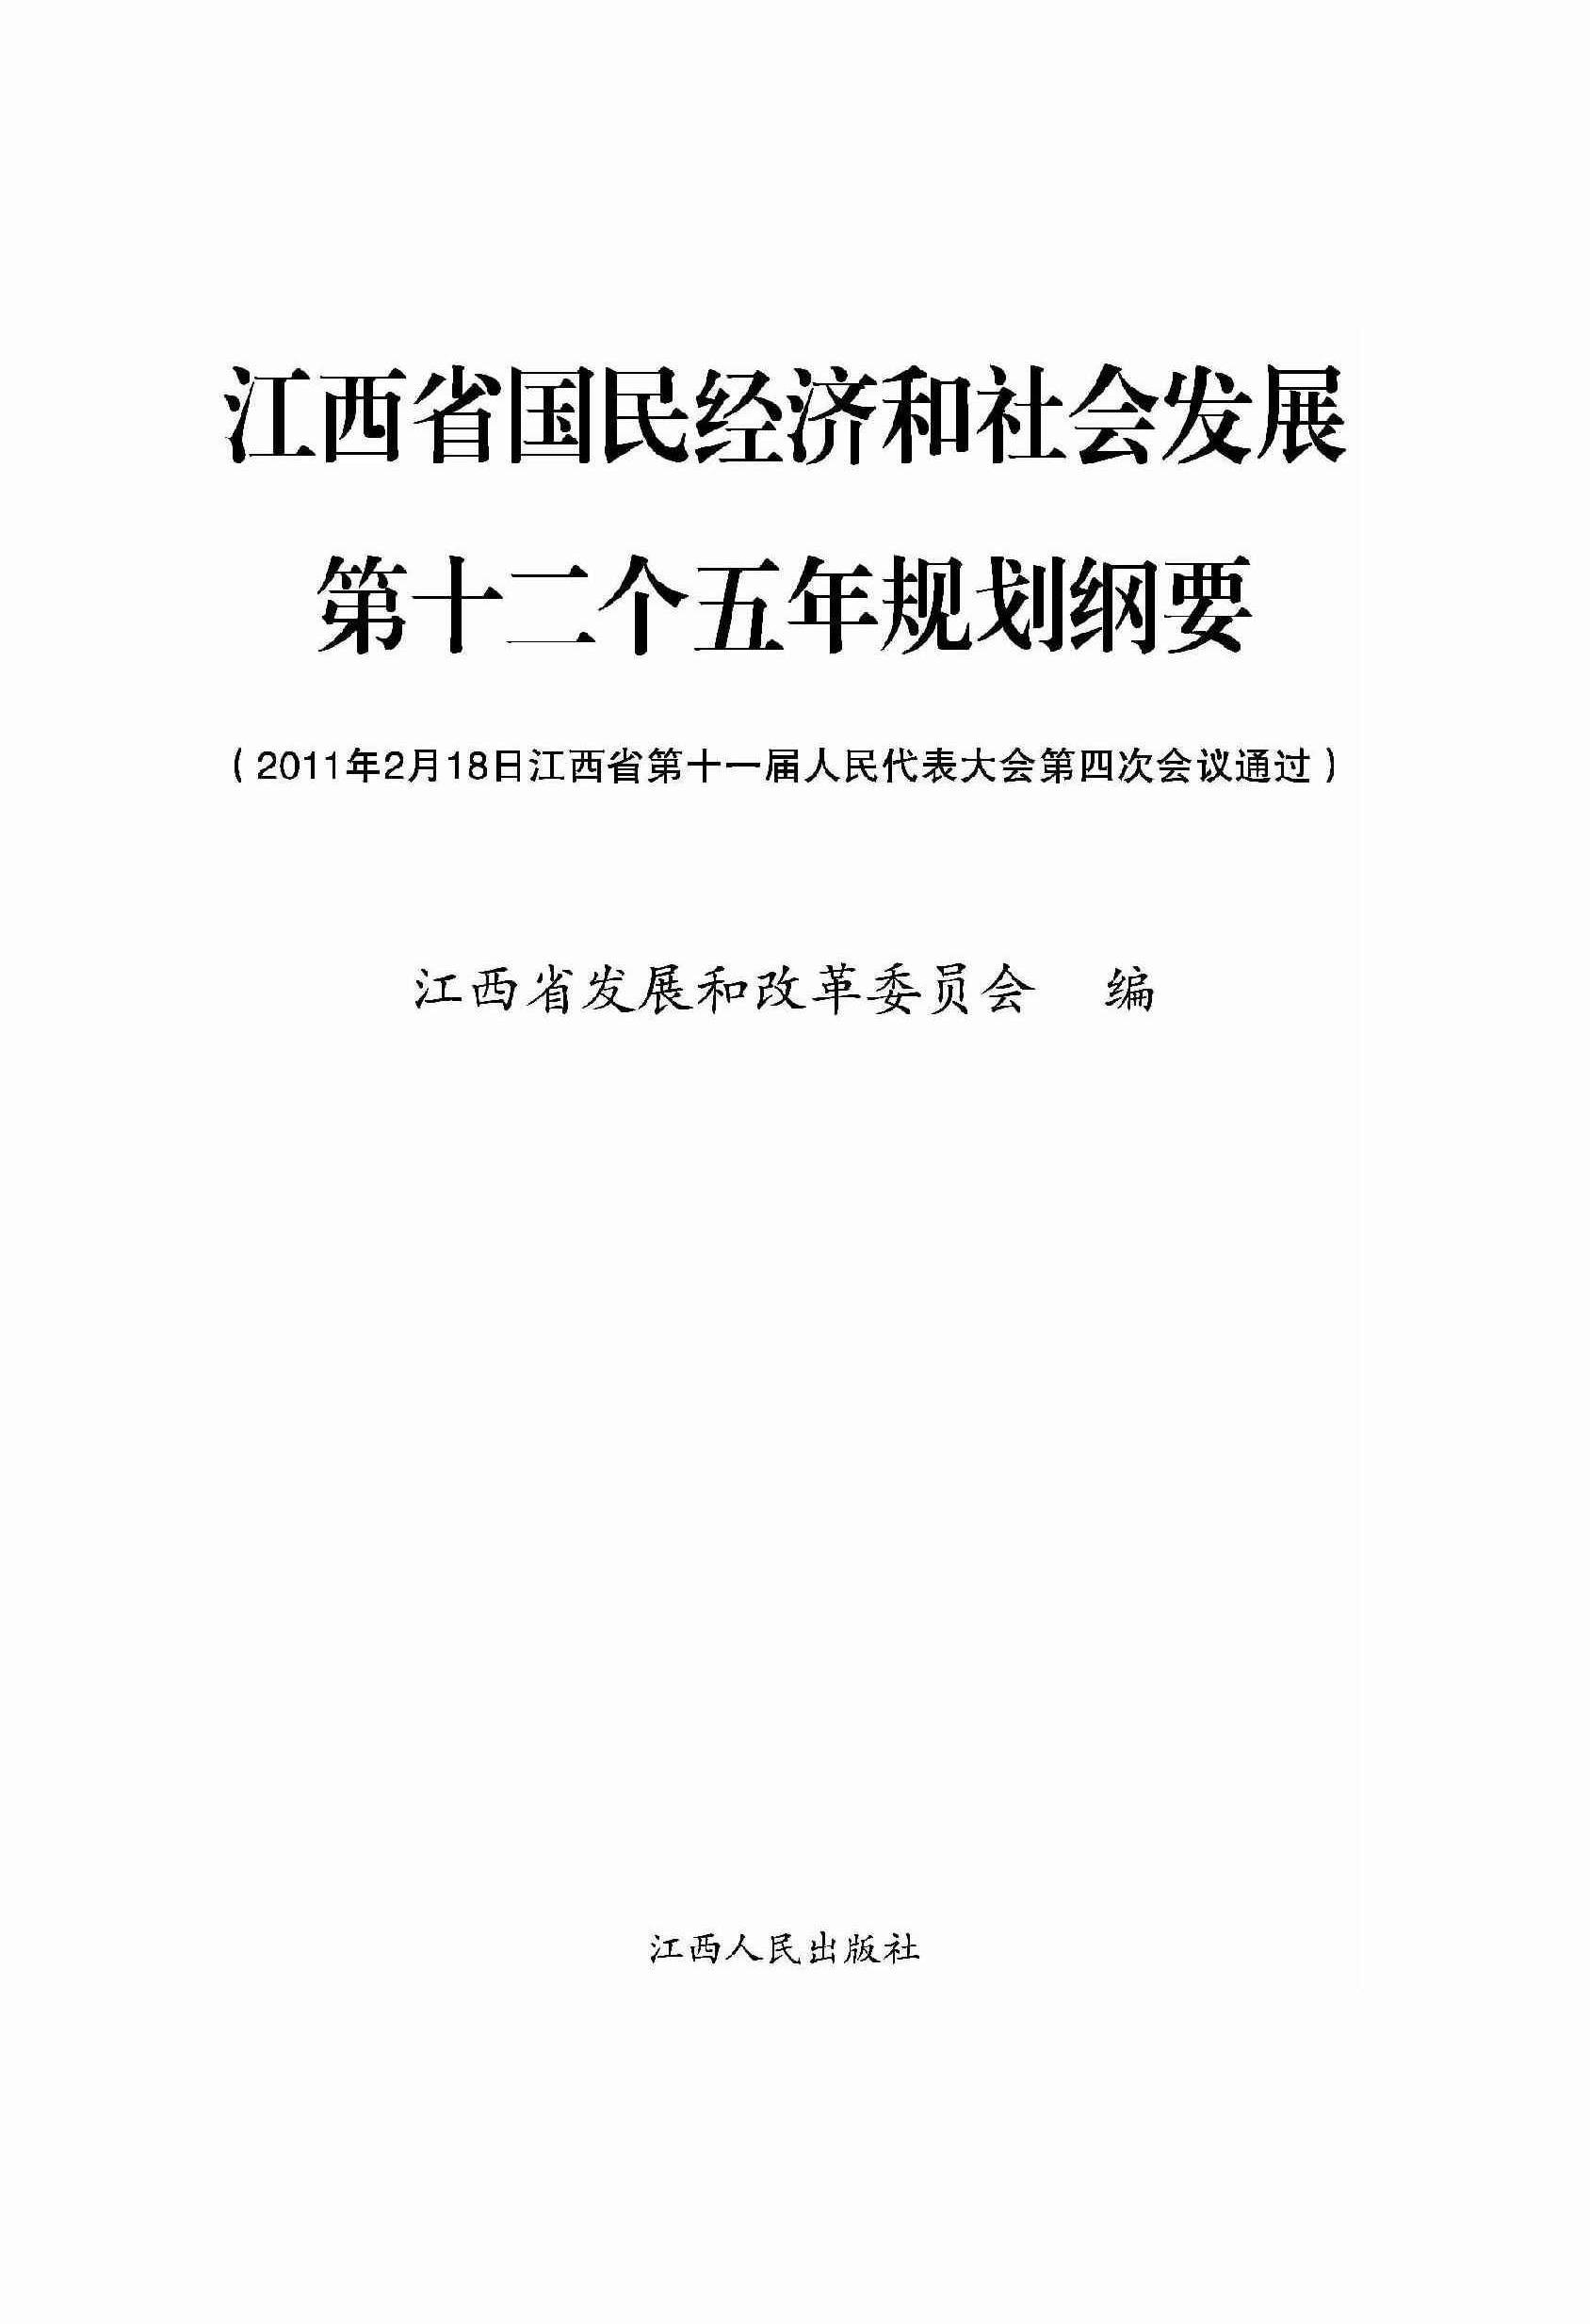 江西省国民经济和社会发展第十二个五年规划纲要